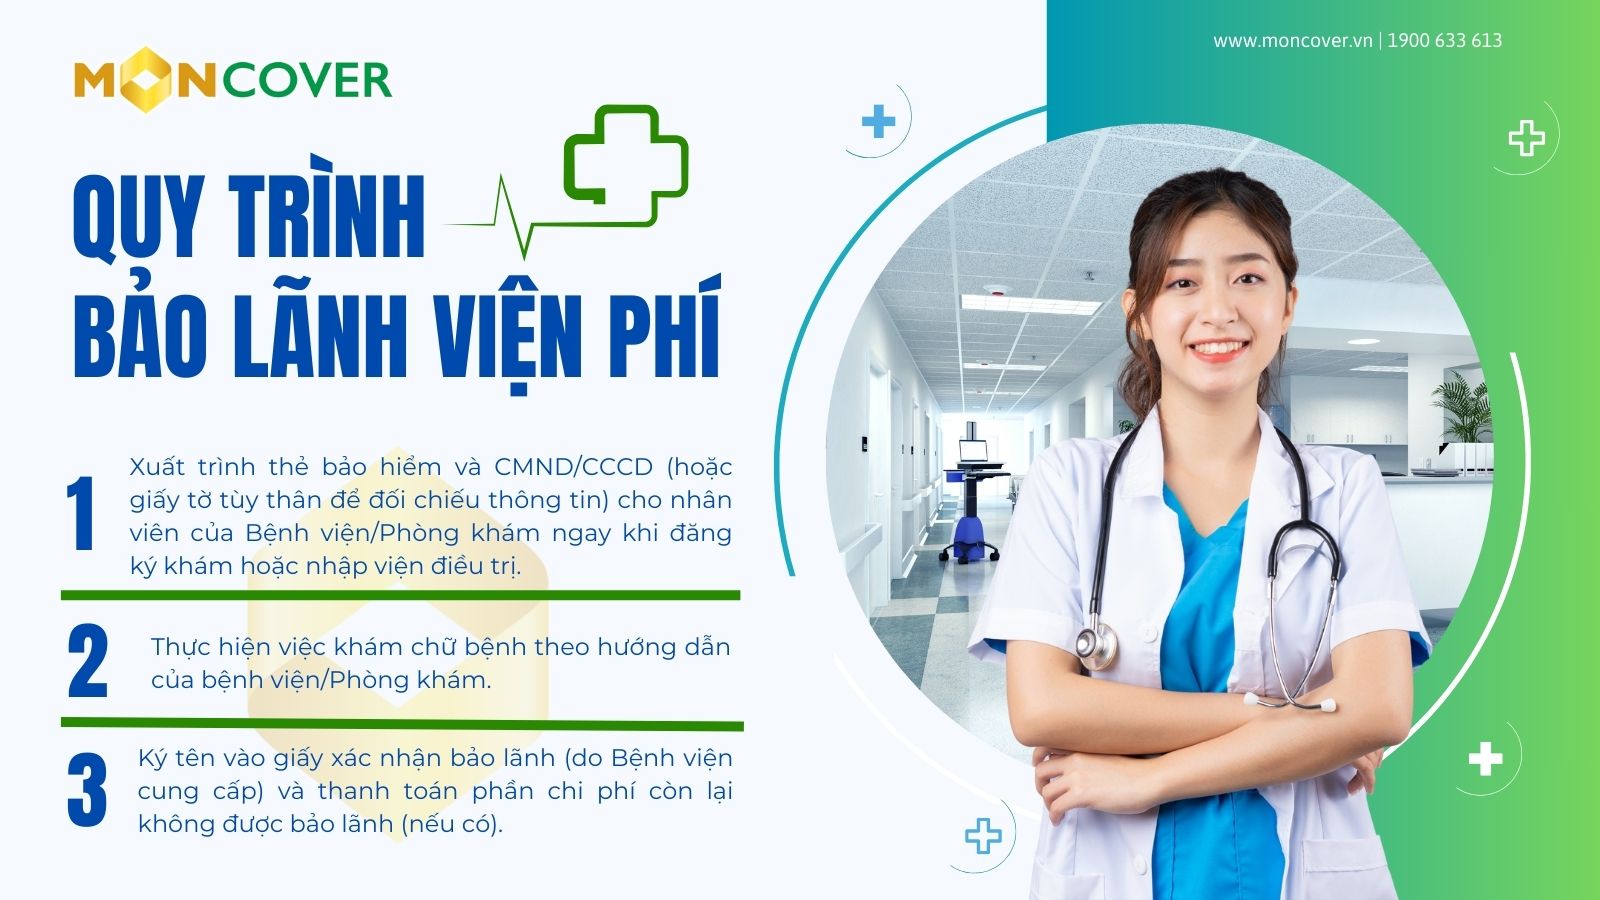 Quyền lợi bảo lãnh viện phí tại Bệnh viện Việt Pháp 